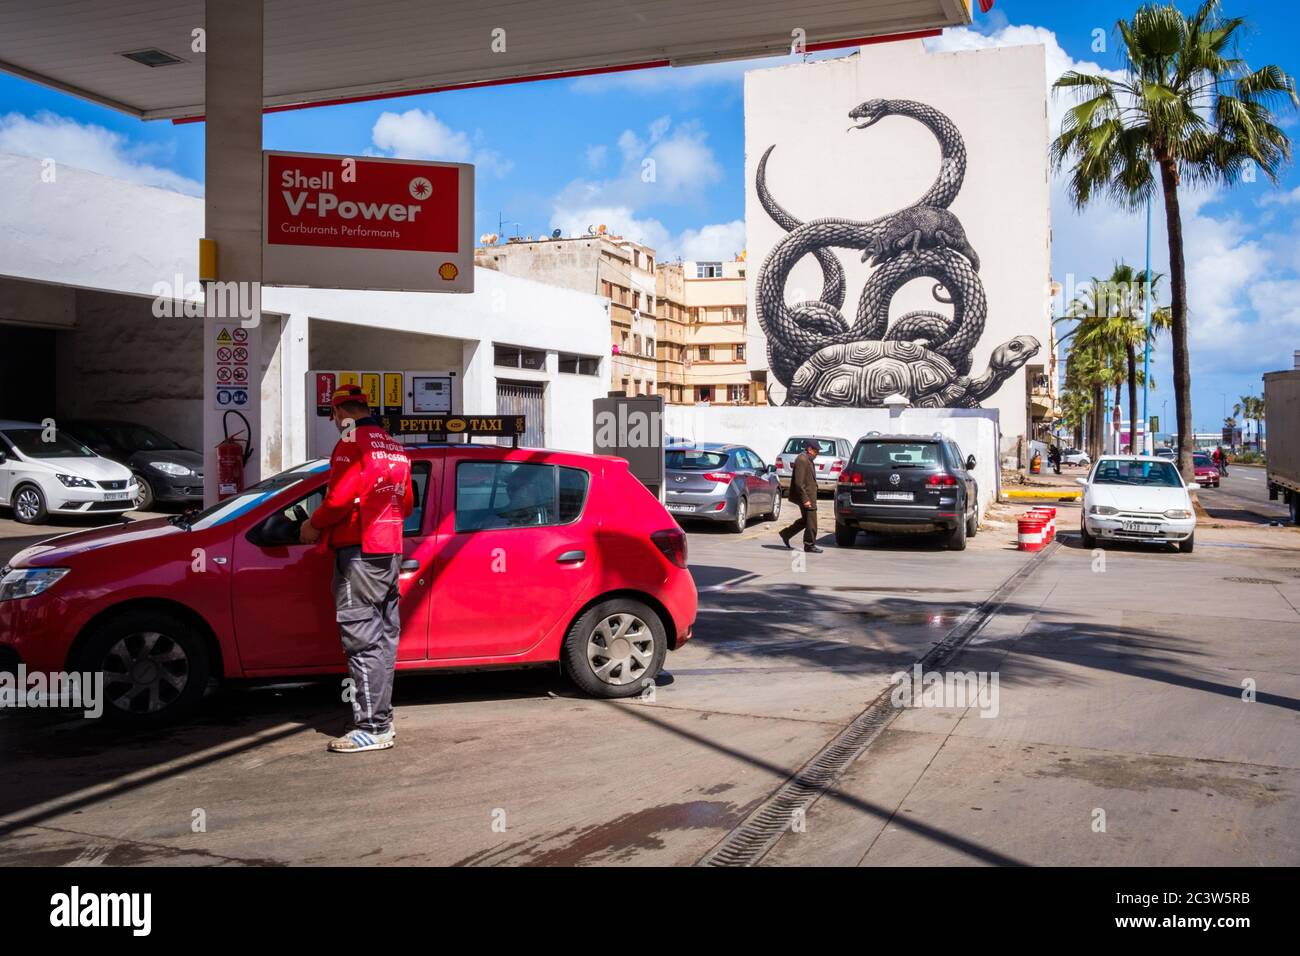 Maroc, Casablanca: Station essence Shell et murale dans le boulevard Zerktouni. Murale représentant une tortue et un serpent, créée par Roa, artiste belge. Banque D'Images